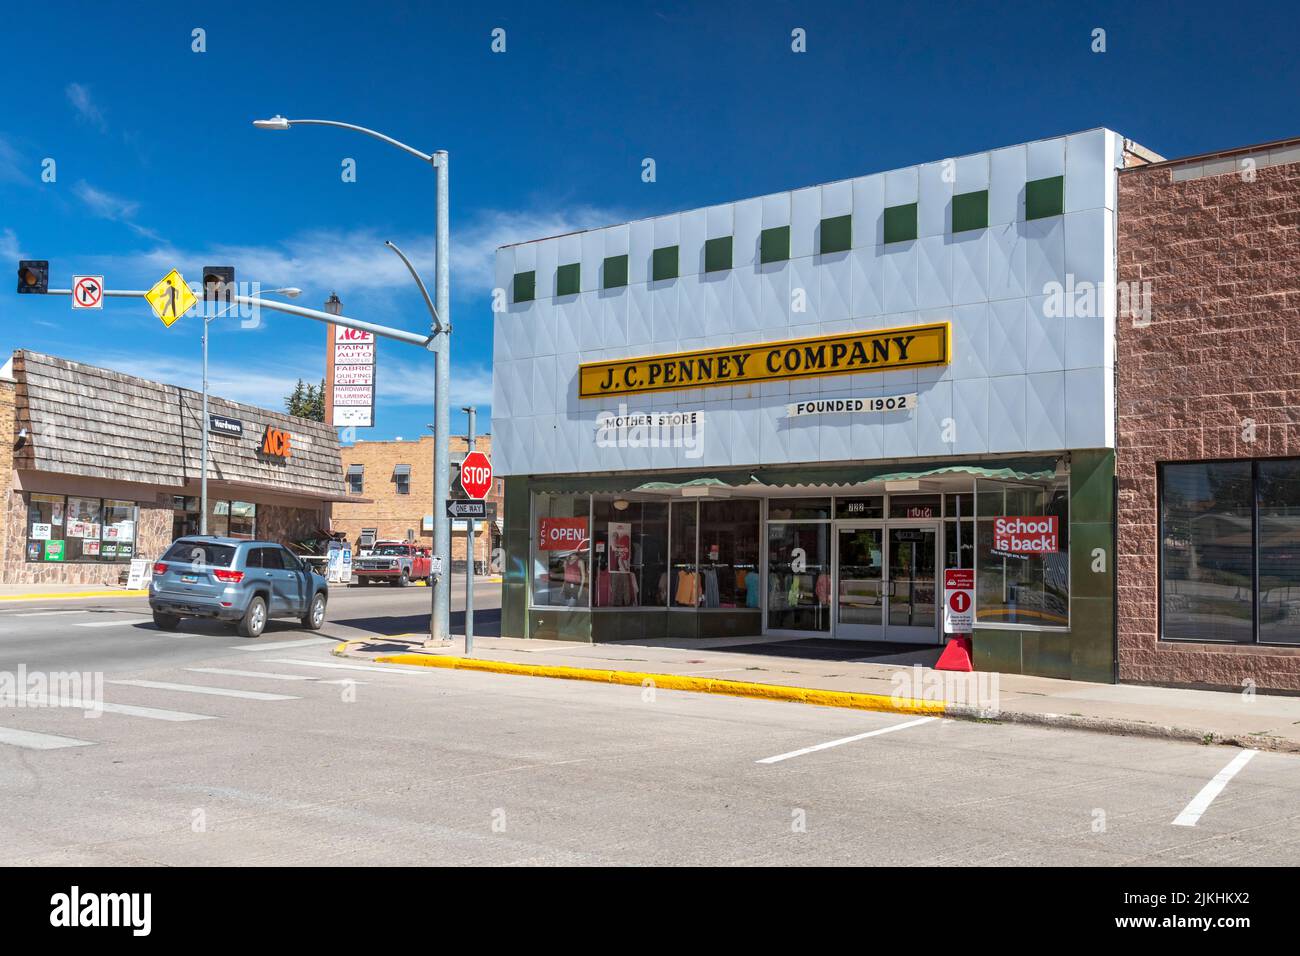 Kemmerer, Wyoming - The J.C. Penney Company 'Mother Store', inaugurado por James Cash Penney, quien fundó la cadena JC Penney. La tienda sigue funcionando. P Foto de stock